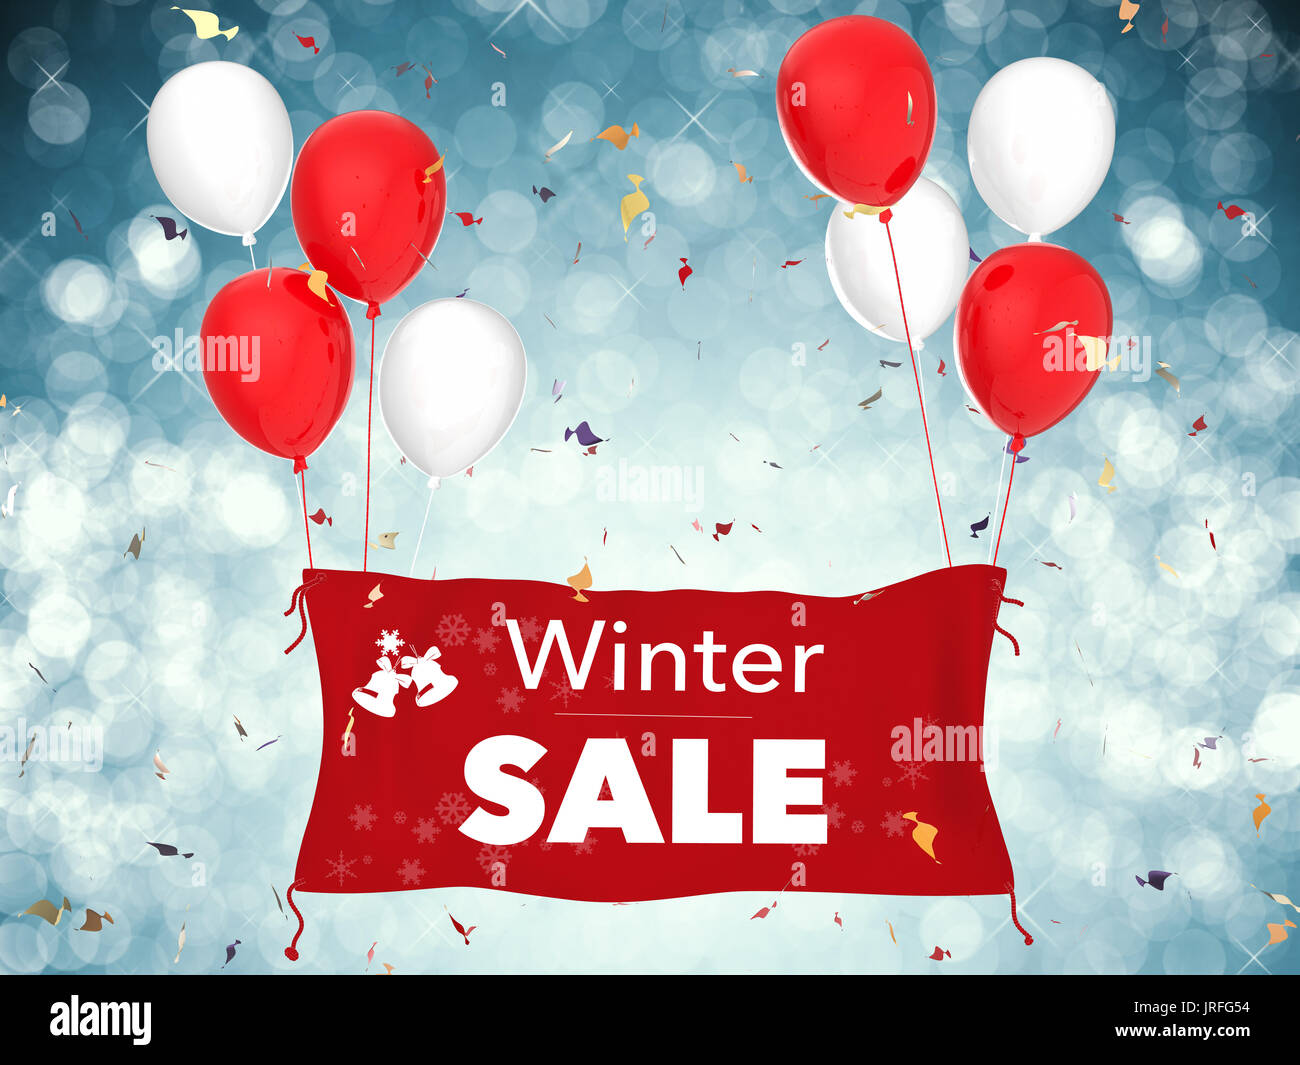 Vente d'hiver en rendu 3d avec bannière bannière de tissu rouge, rouge ballons et confettis Banque D'Images